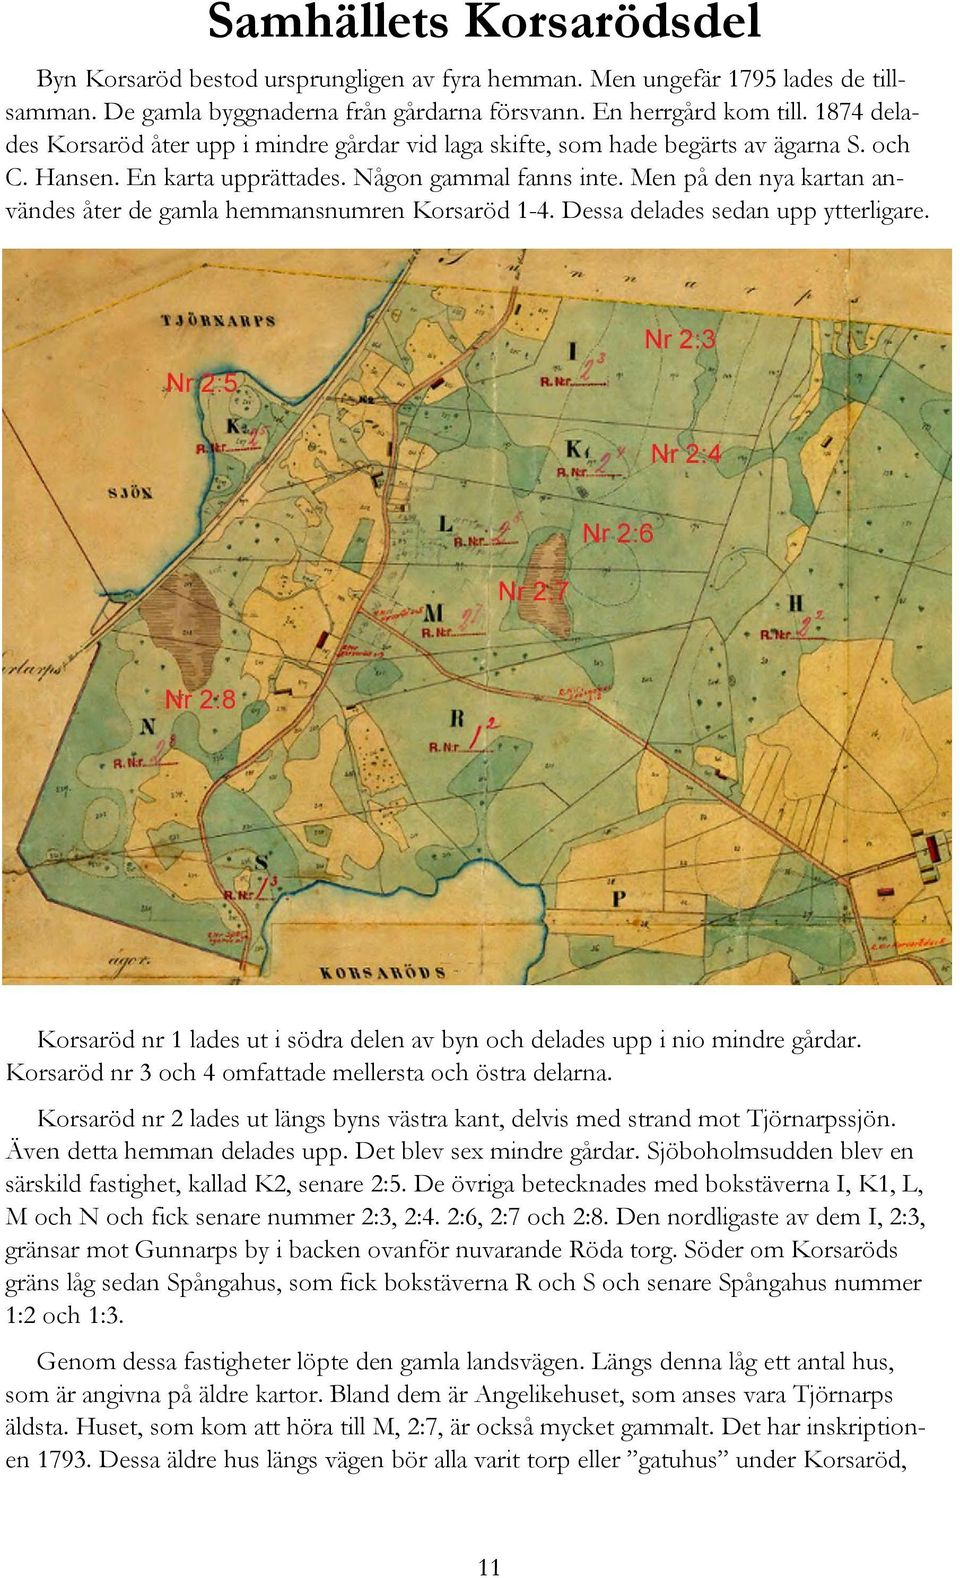 Men på den nya kartan användes åter de gamla hemmansnumren Korsaröd 1-4. Dessa delades sedan upp ytterligare. Korsaröd nr 1 lades ut i södra delen av byn och delades upp i nio mindre gårdar.